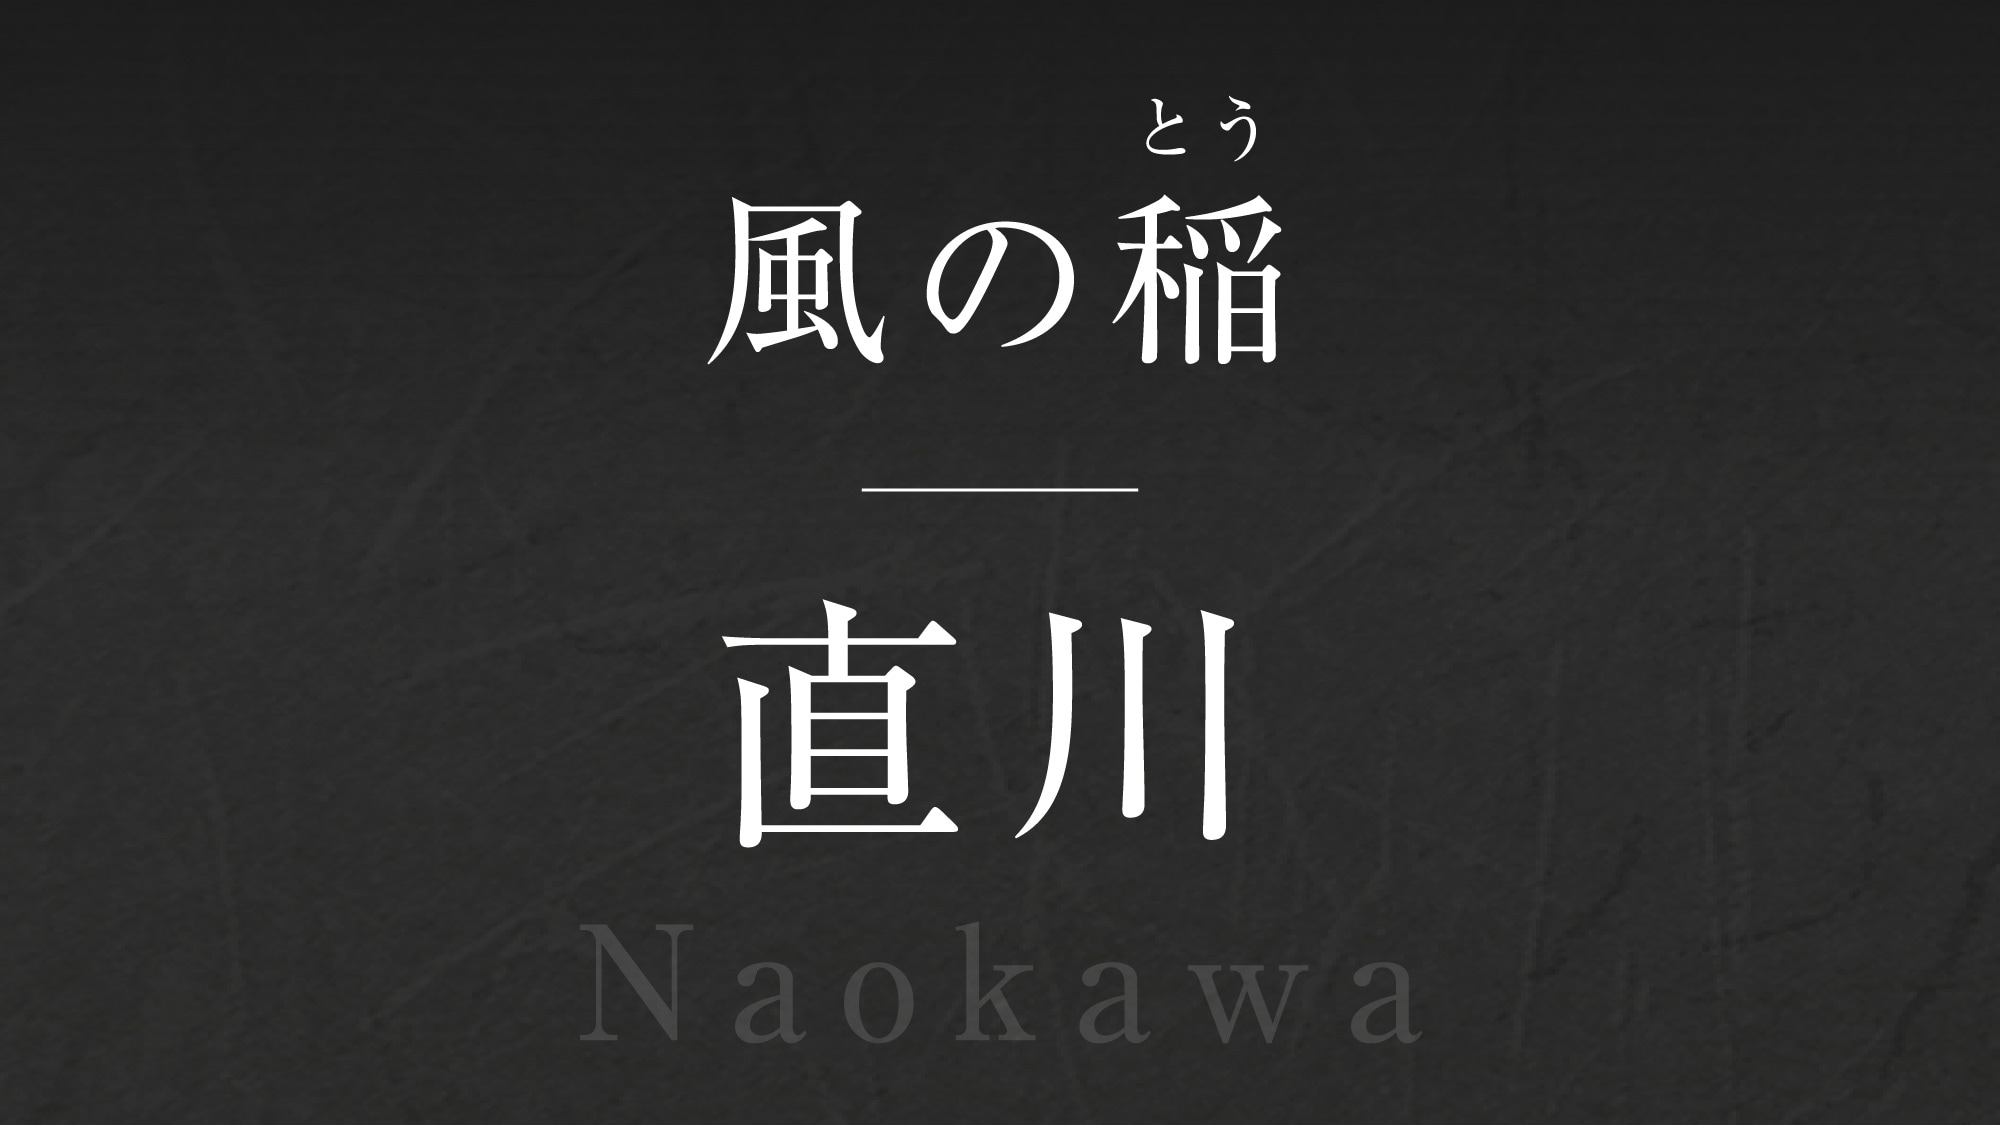 Wind rice [Naokawa] -Naokawa-